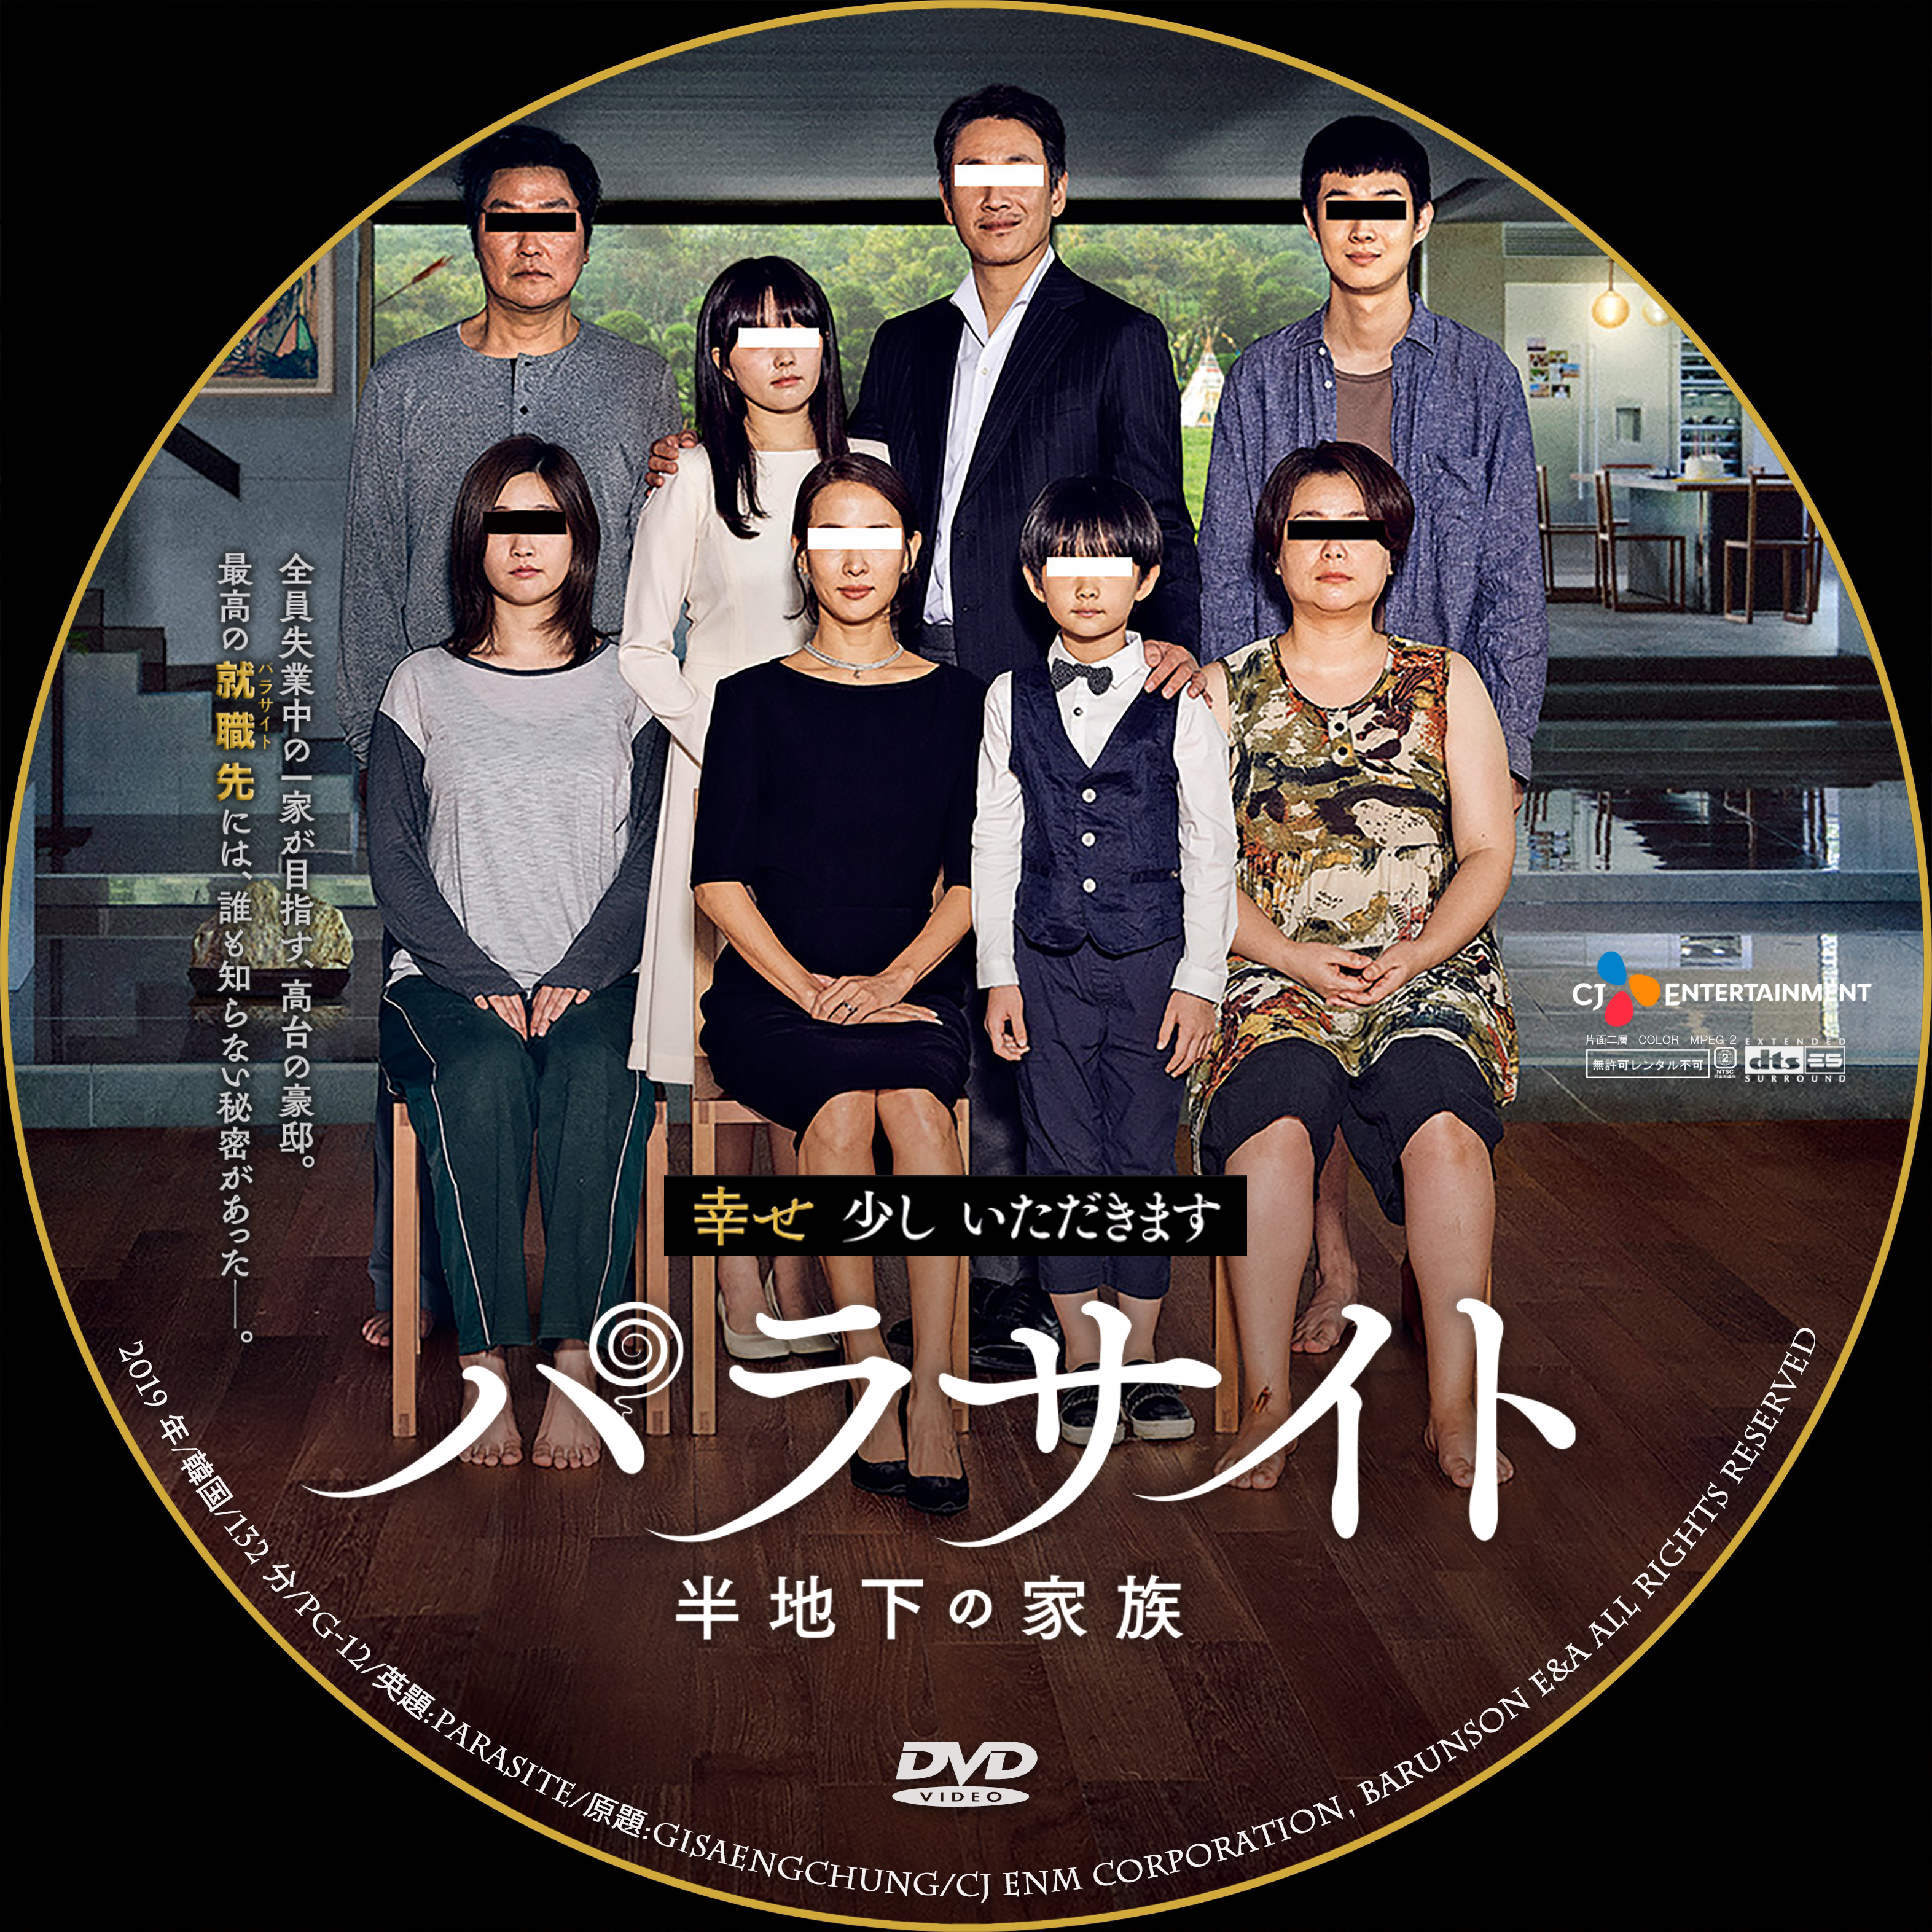 Blu-ray▼パラサイト 半地下の家族 ブルーレイディスク▽レンタル落ち 韓国 アカデミー賞